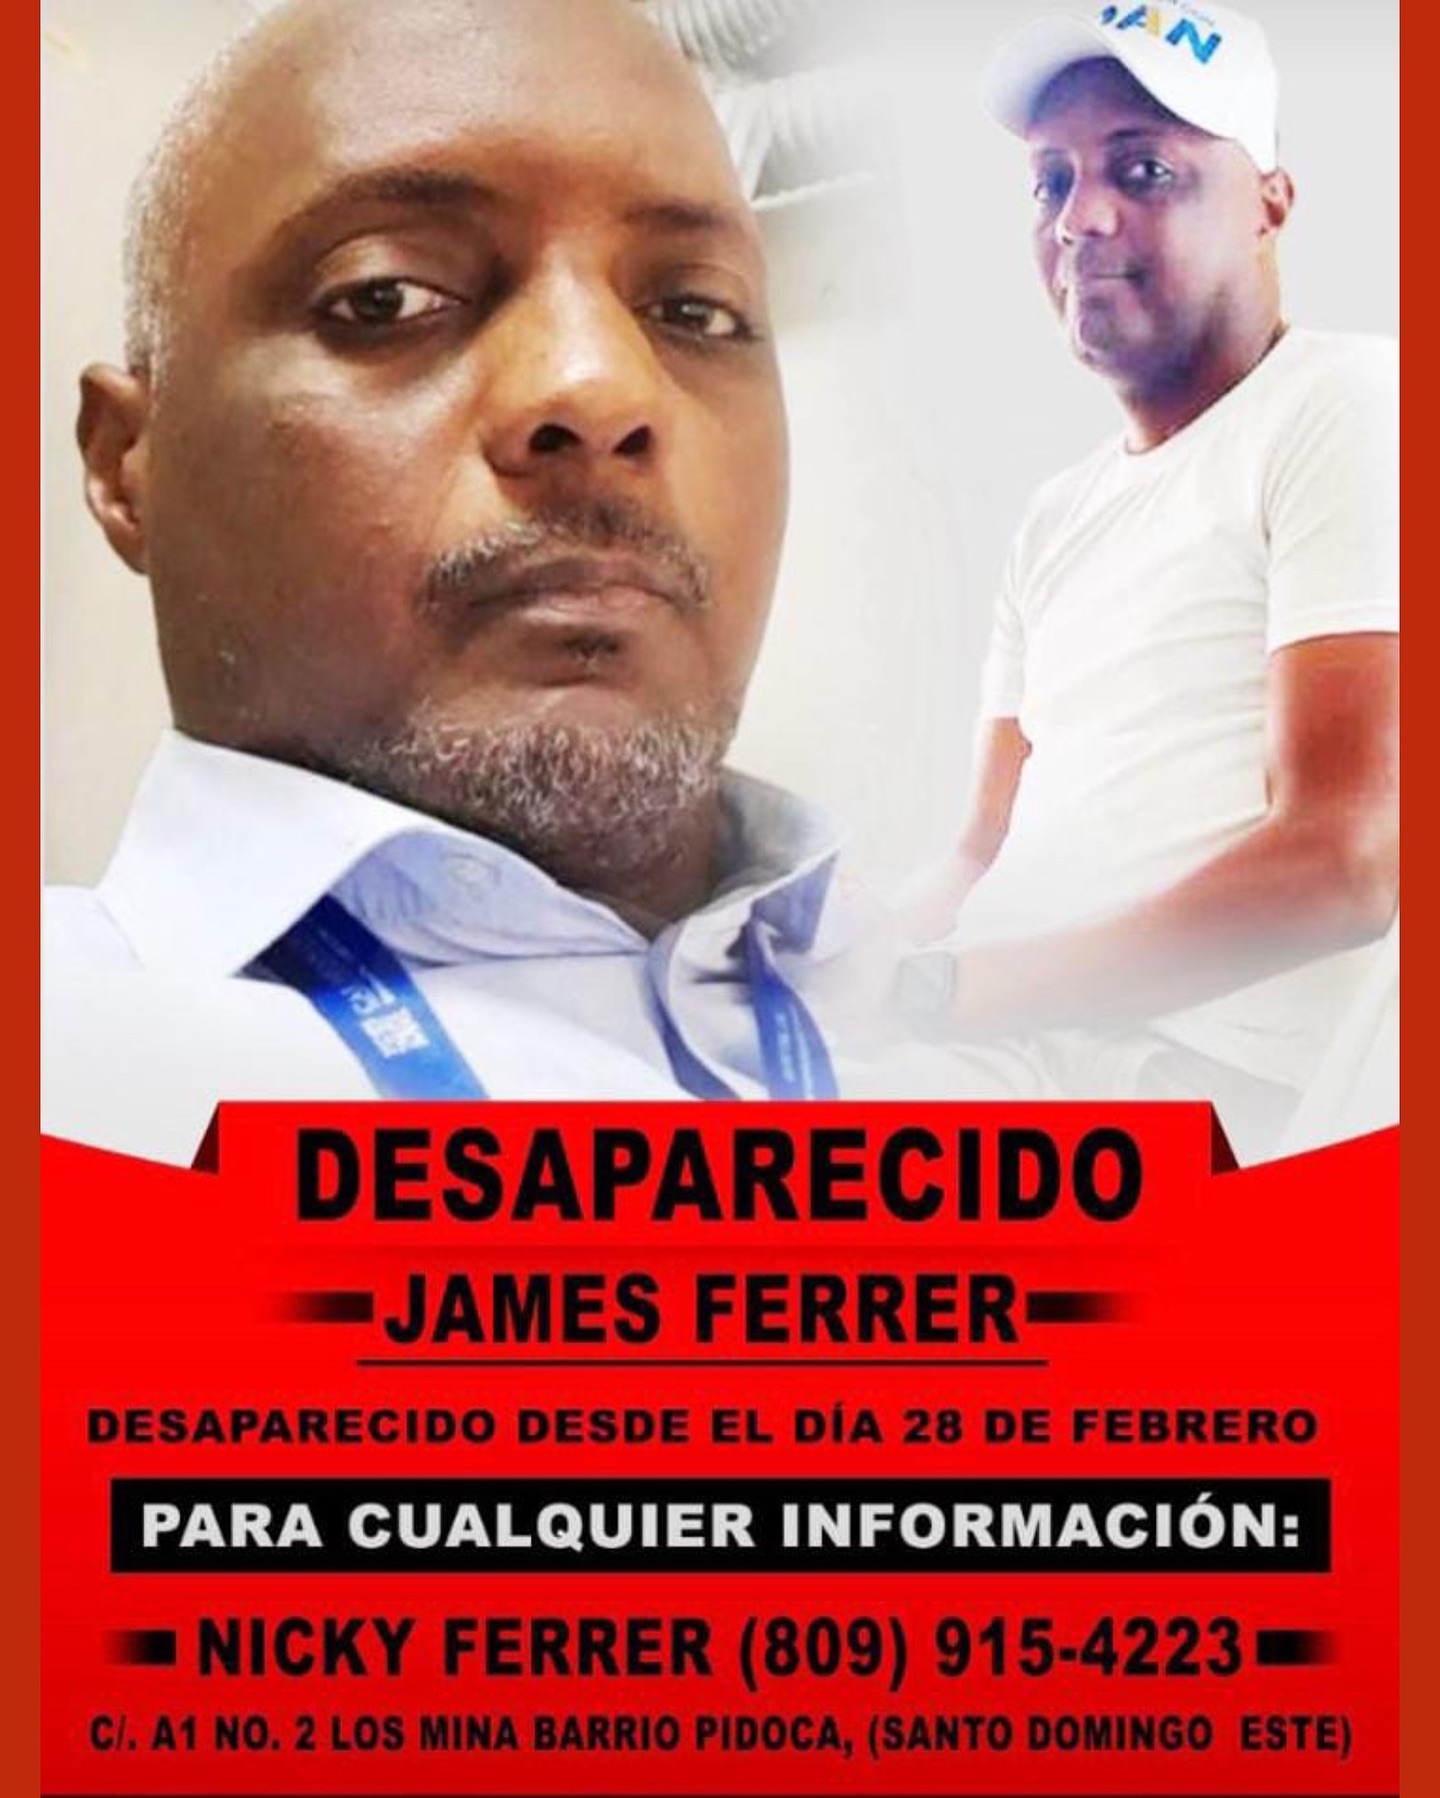 James Ferrer